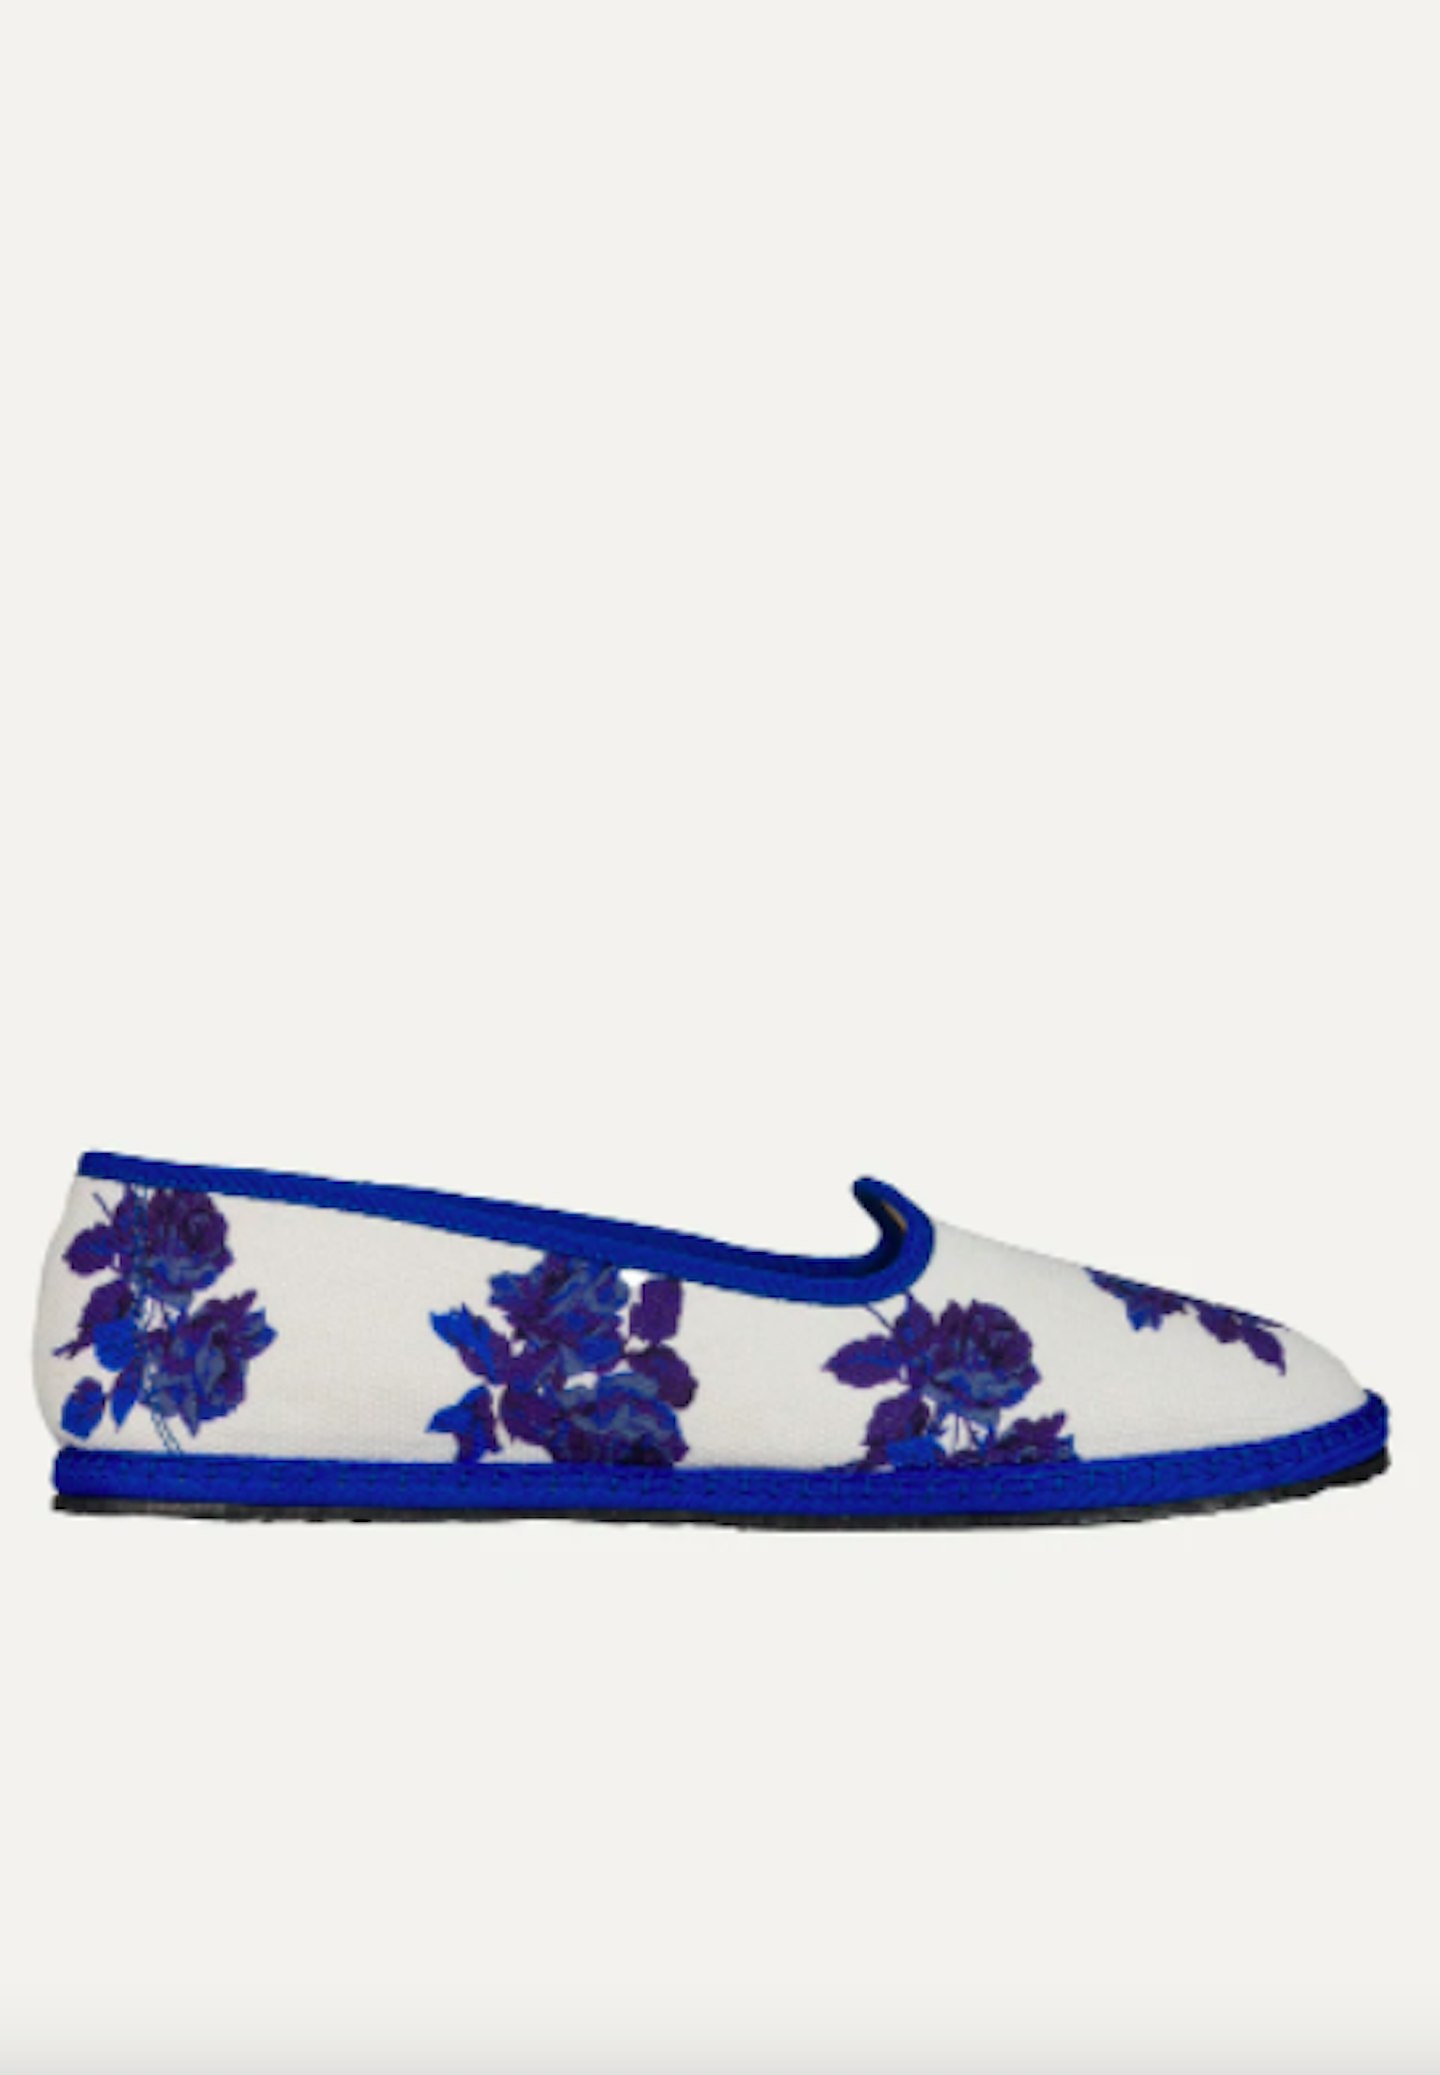 Classic Furlane Slipper in Blue Floral, £140